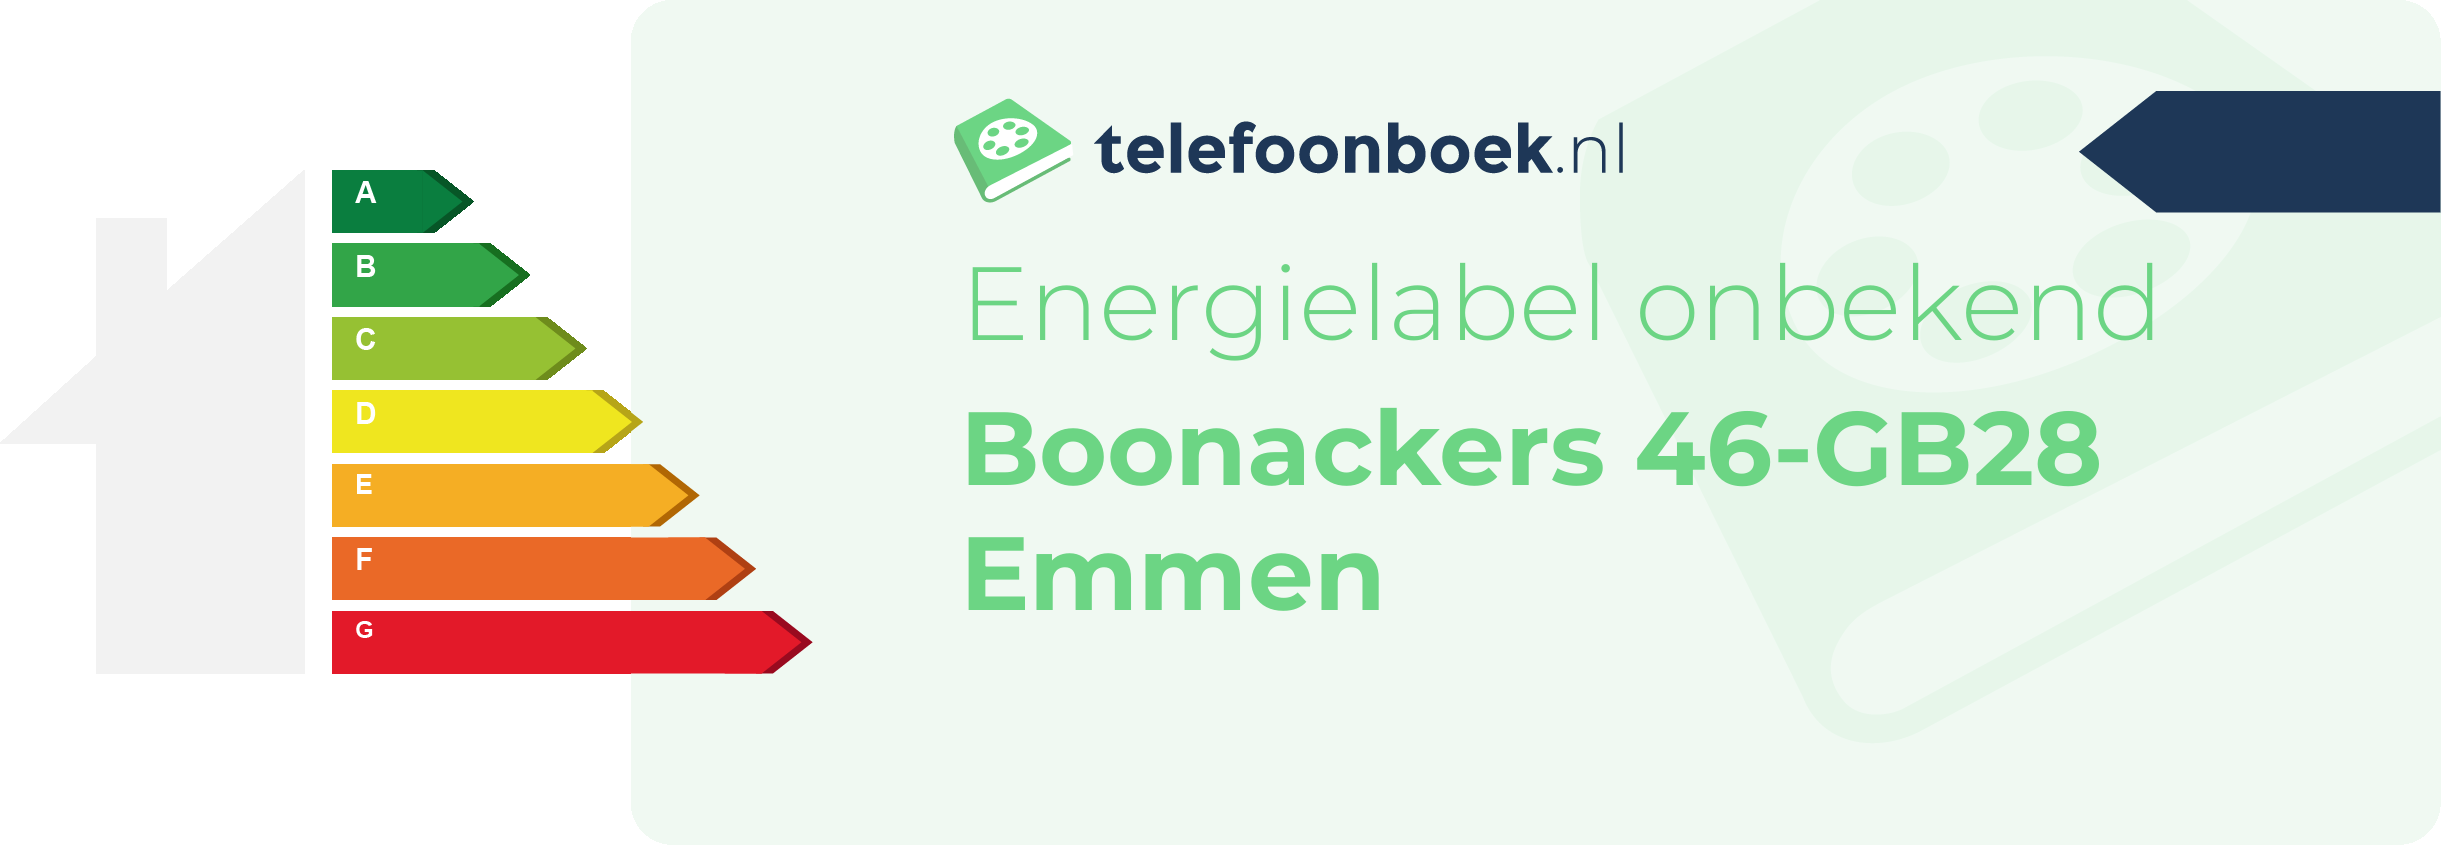 Energielabel Boonackers 46-GB28 Emmen